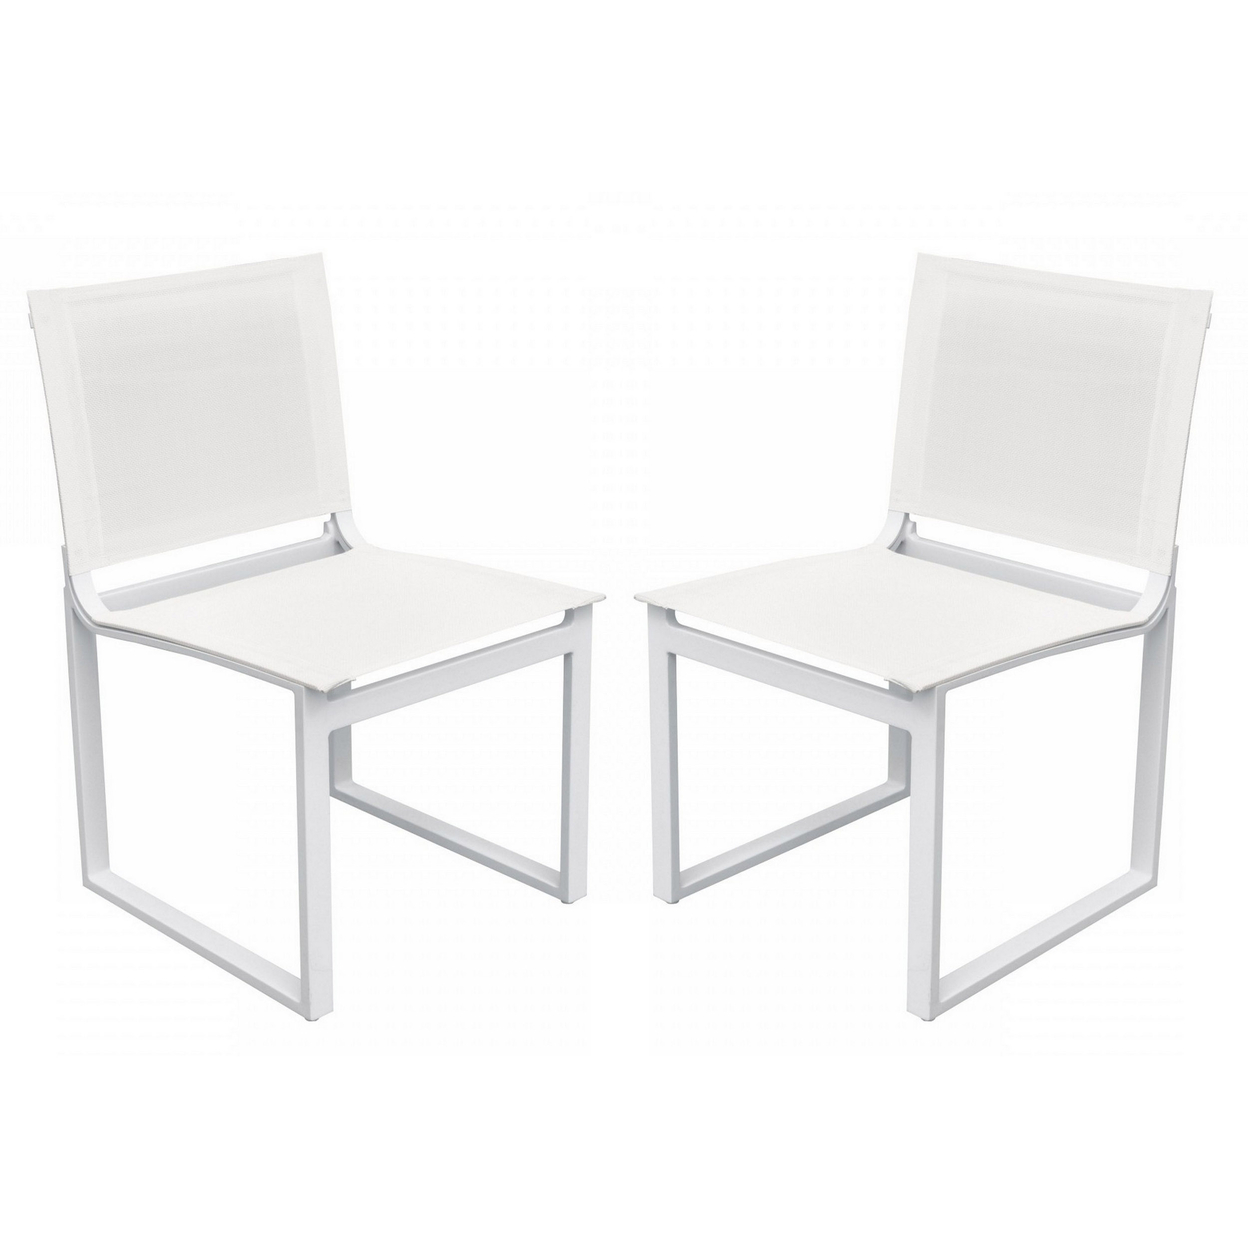 33 Inch Sling Seat Metal Dining Chair, Set Of 2, White- Saltoro Sherpi